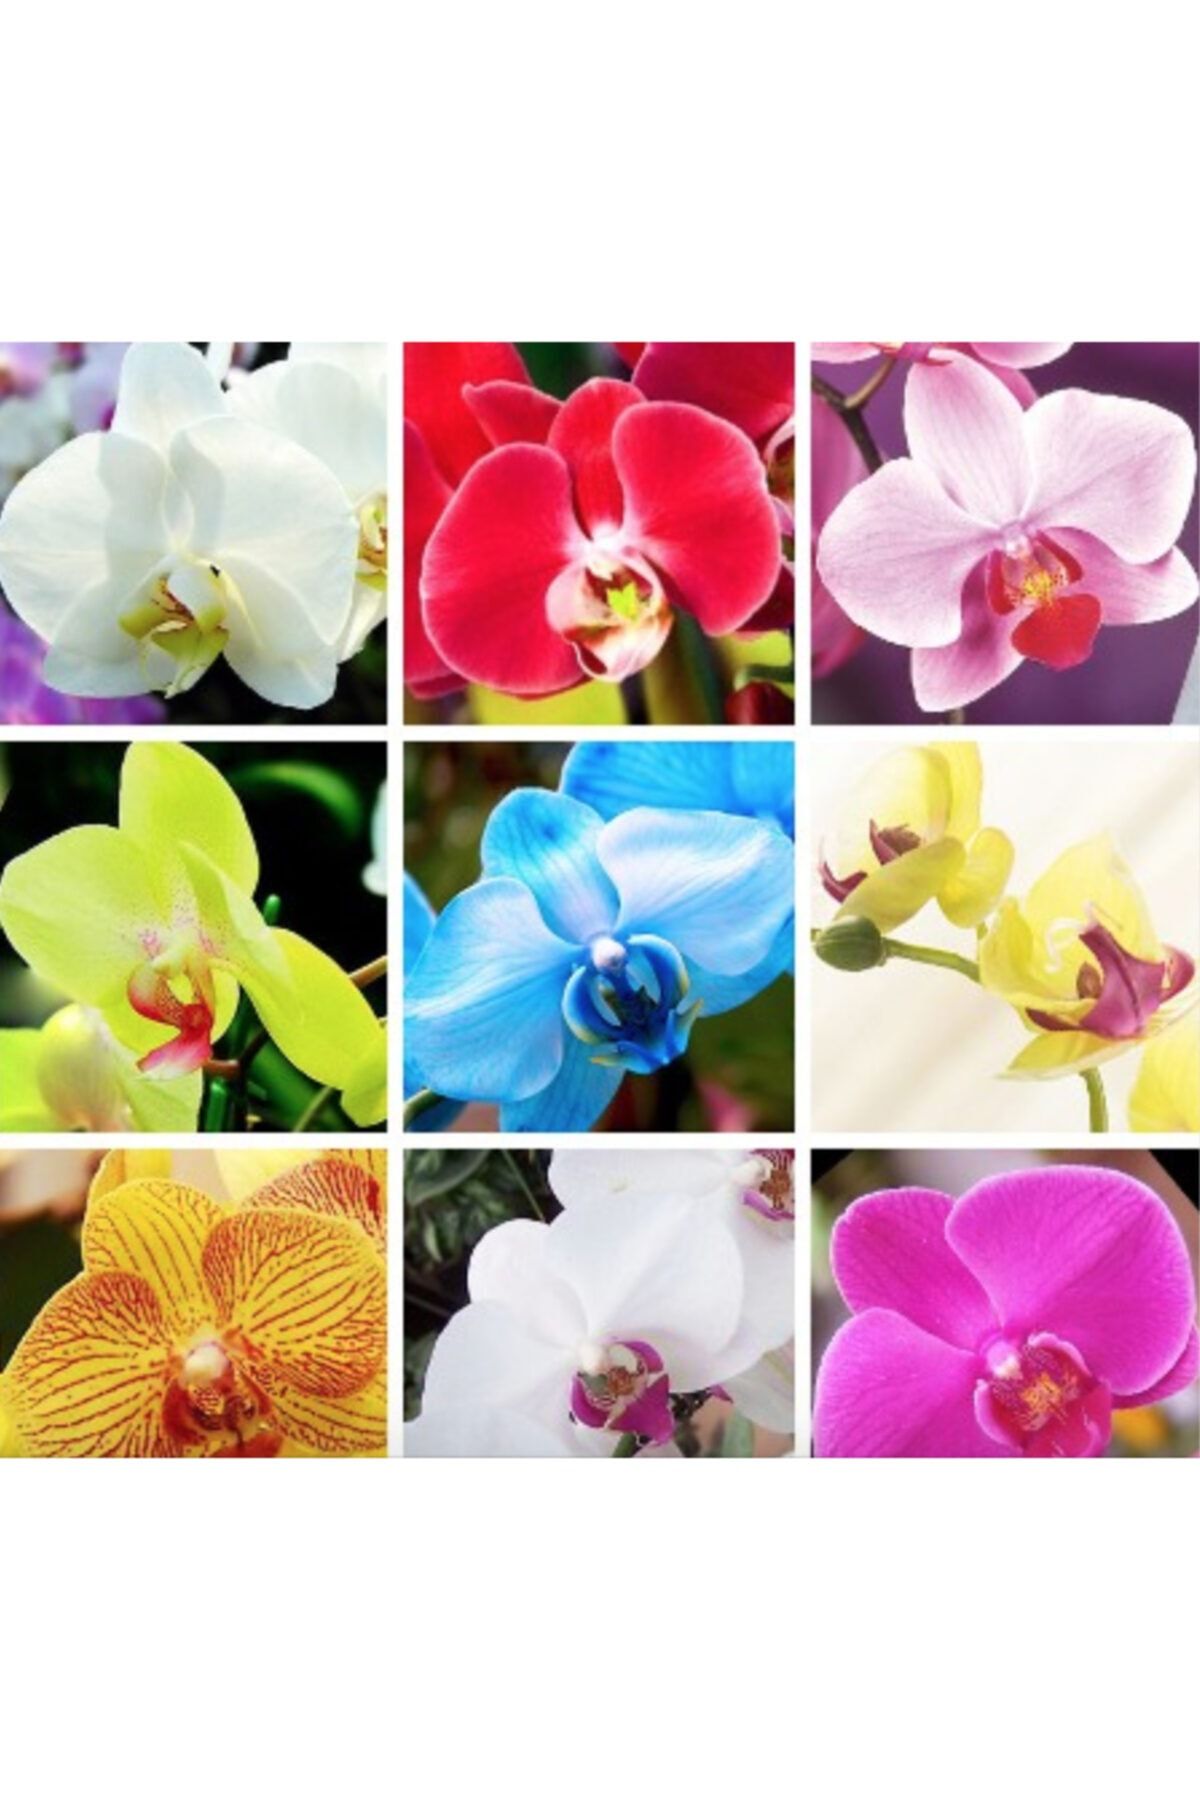 Tohum Dünyam 9 Çeşit Karışık Renk Orkide Tohumu 25+ Tohum